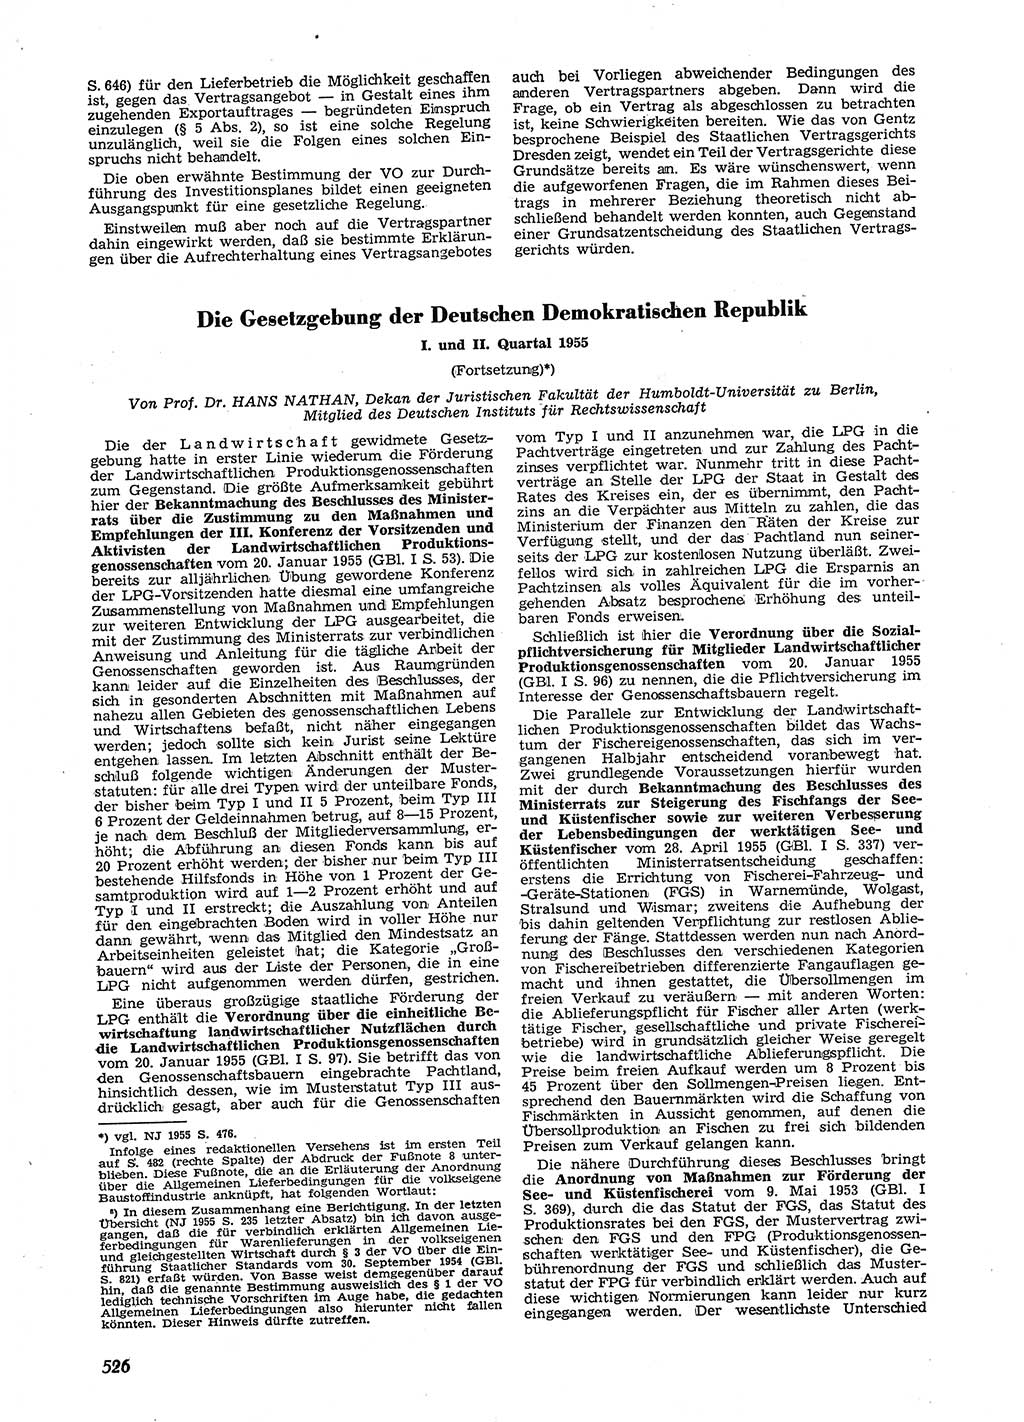 Neue Justiz (NJ), Zeitschrift für Recht und Rechtswissenschaft [Deutsche Demokratische Republik (DDR)], 9. Jahrgang 1955, Seite 526 (NJ DDR 1955, S. 526)